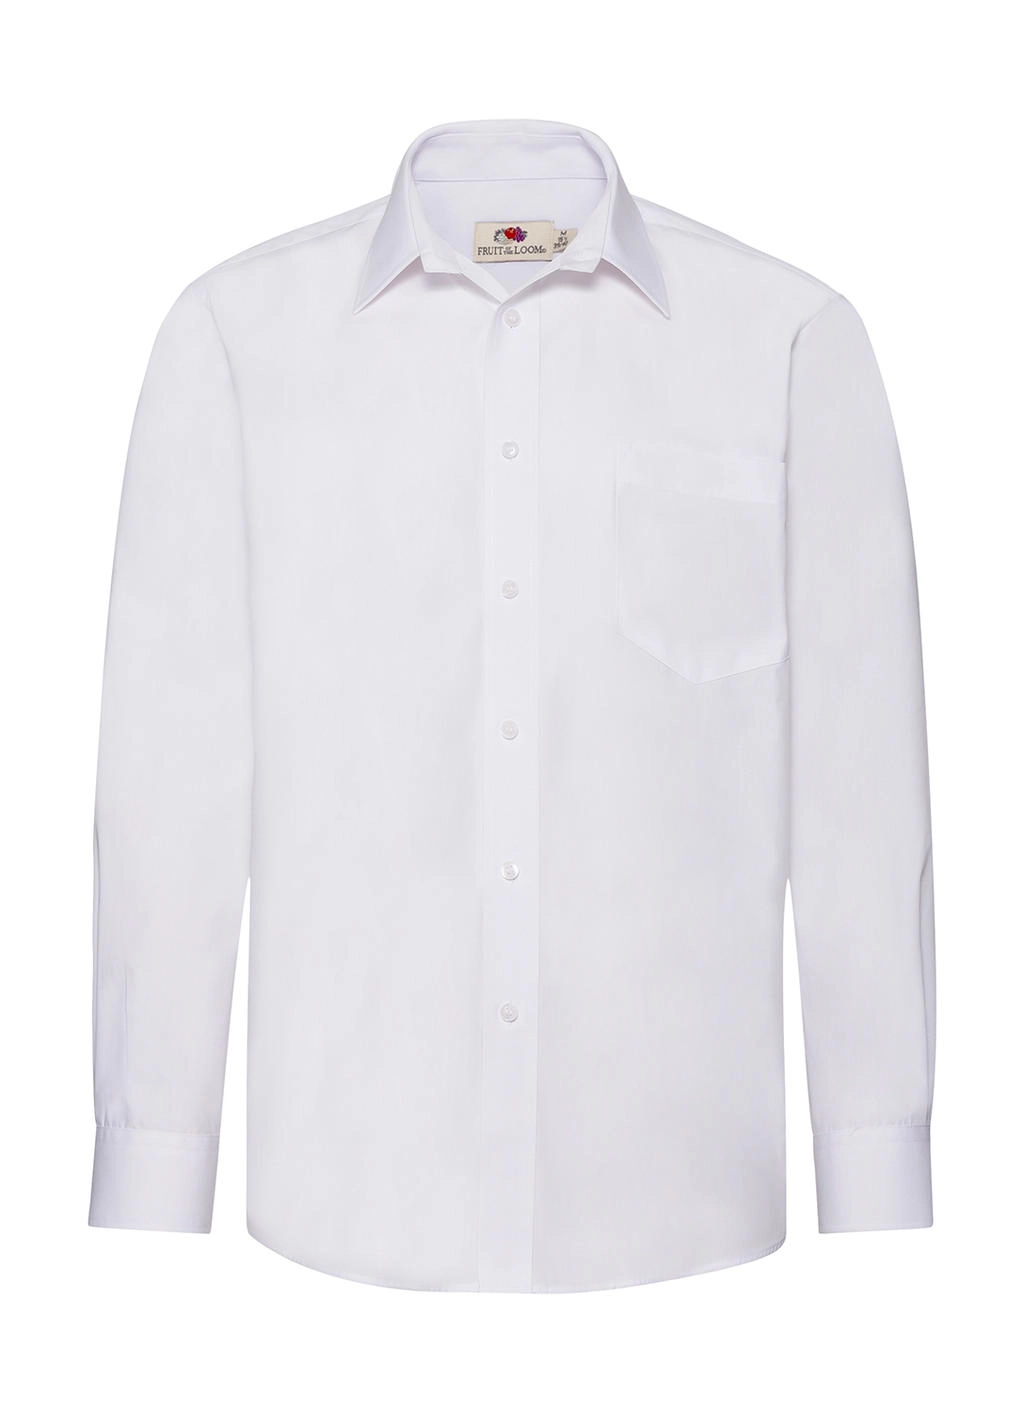 Poplin Shirt LS zum Besticken und Bedrucken in der Farbe White mit Ihren Logo, Schriftzug oder Motiv.